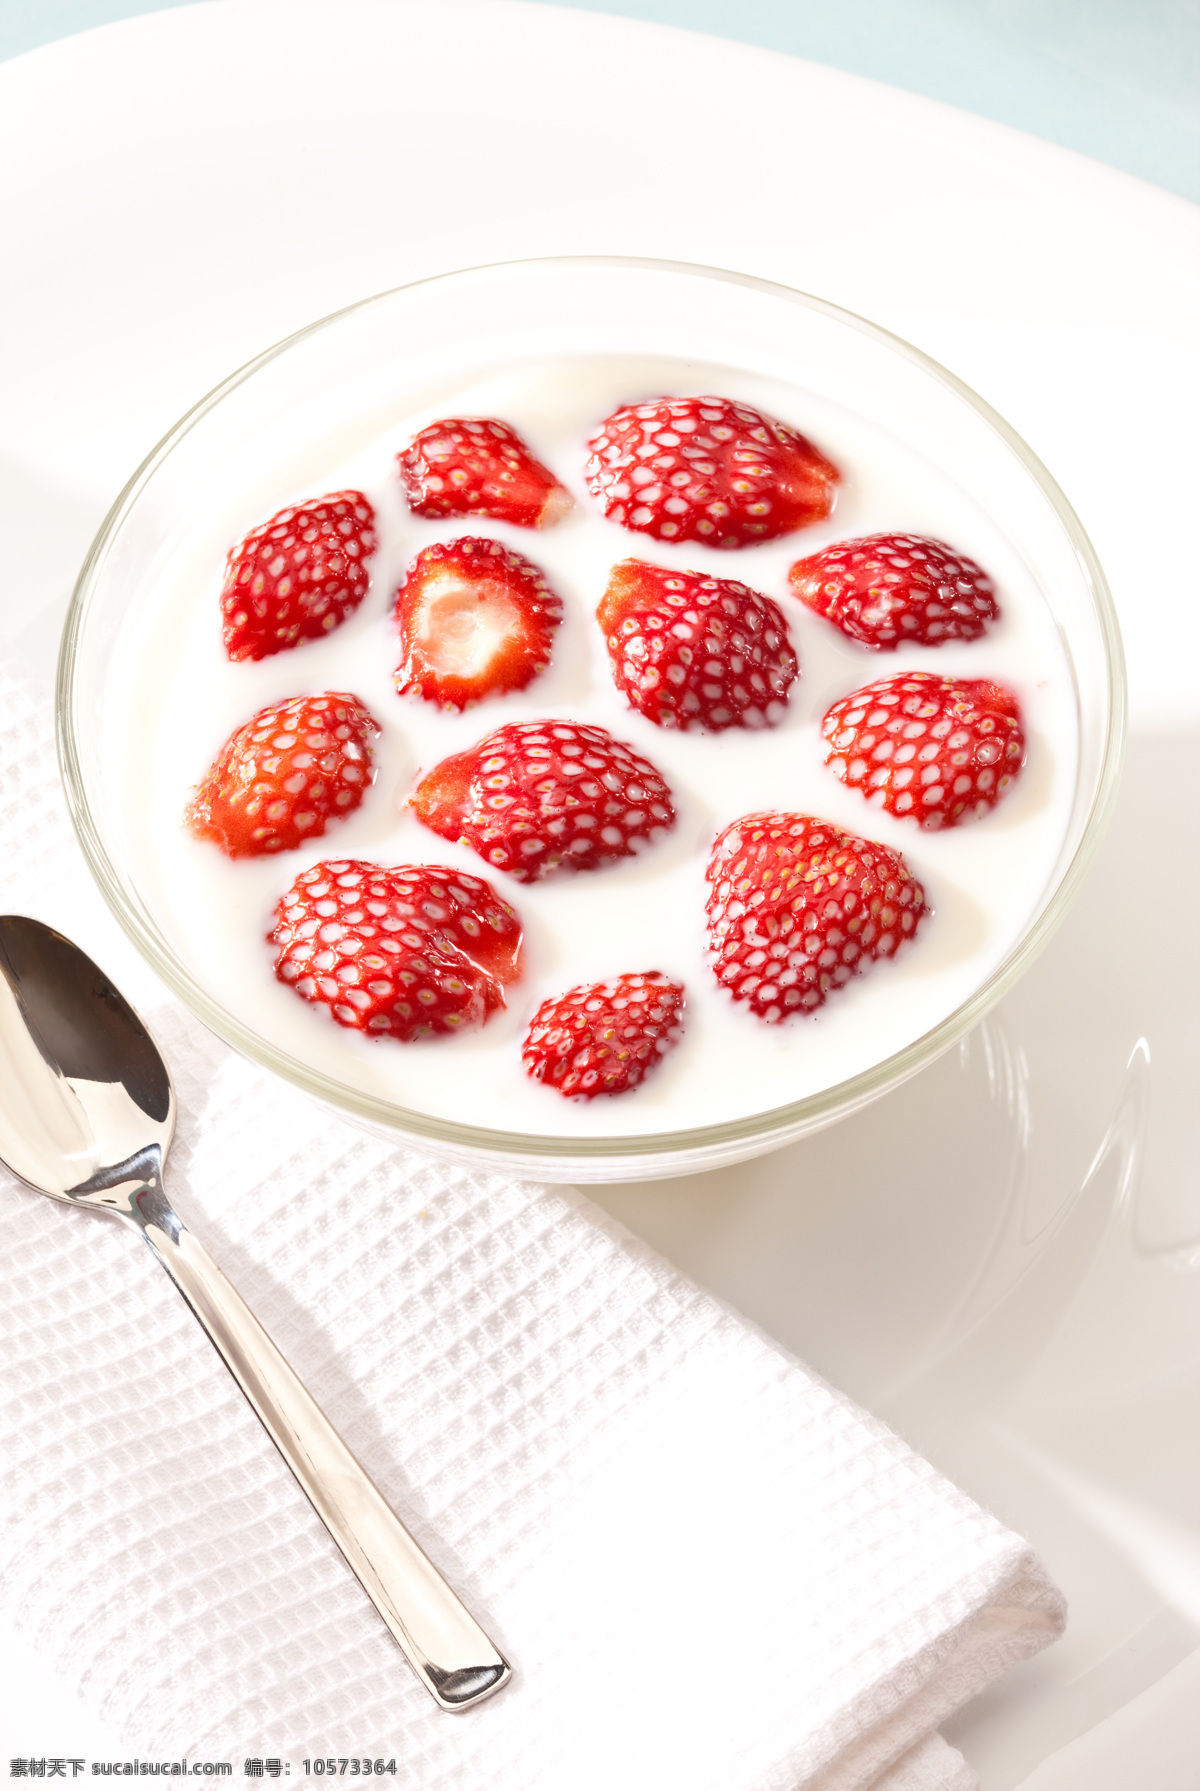 白色 餐布 餐巾 餐饮美食 草莓 牛奶 勺子 高清 图 温馨 早餐 碗 奶白色 饮料 西餐美食 psd源文件 餐饮素材